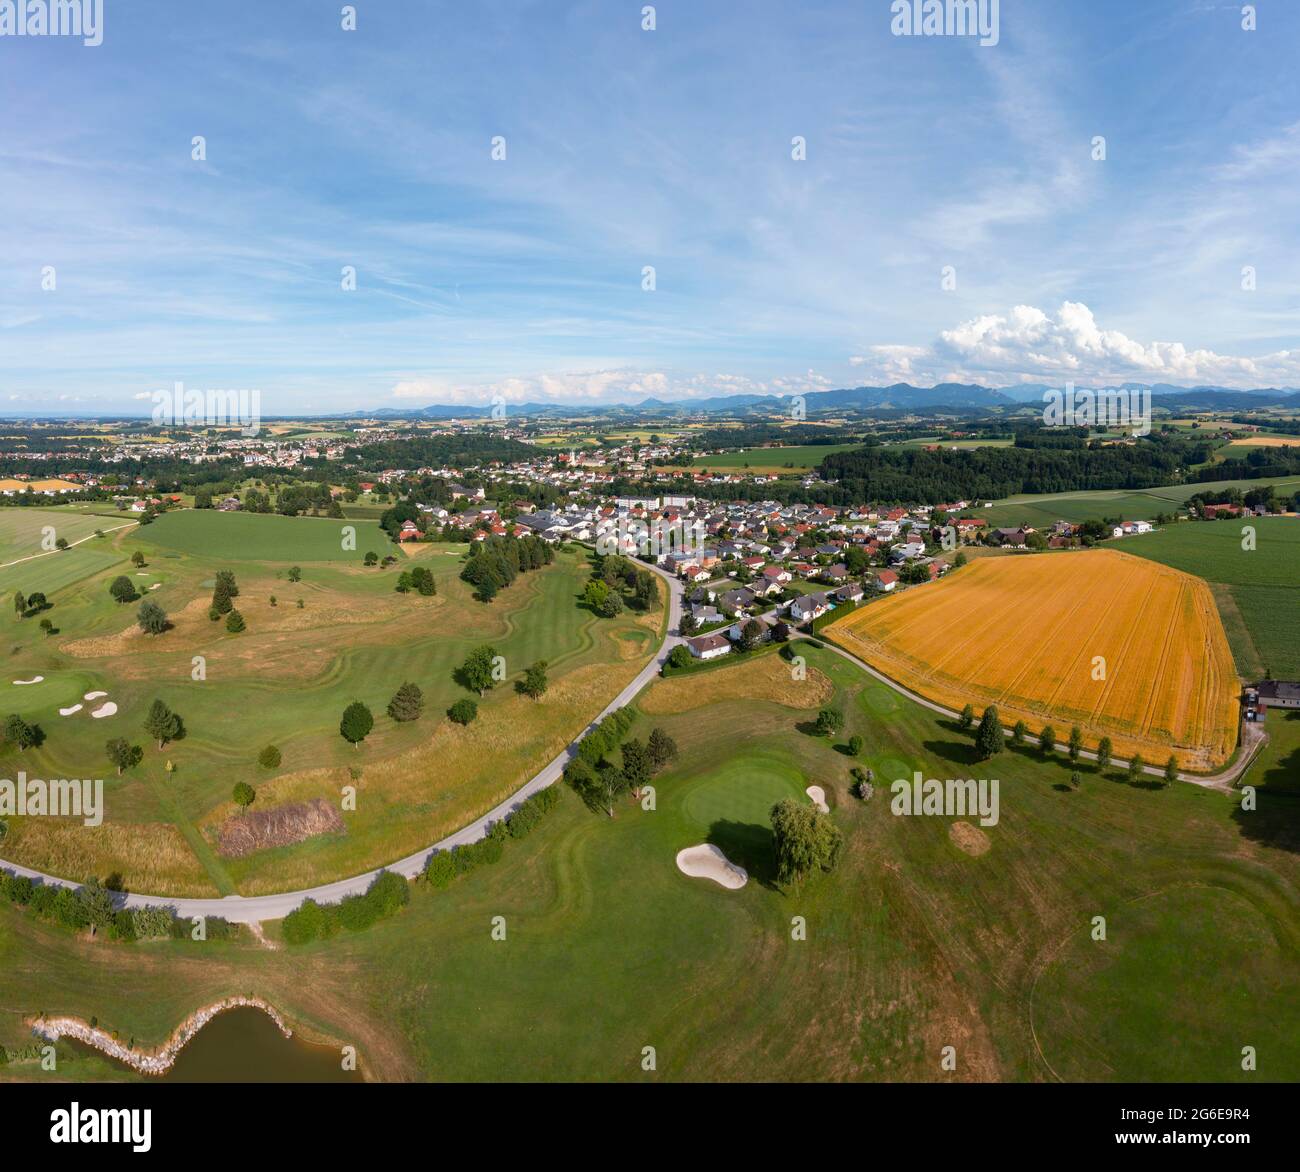 Drone image, agricultural landscape and golf club Herzog Tassilo bei Bad Hall, Pfarrkirchen bei Bad Hall, Traunviertel, Upper Austria, Austria Stock Photo